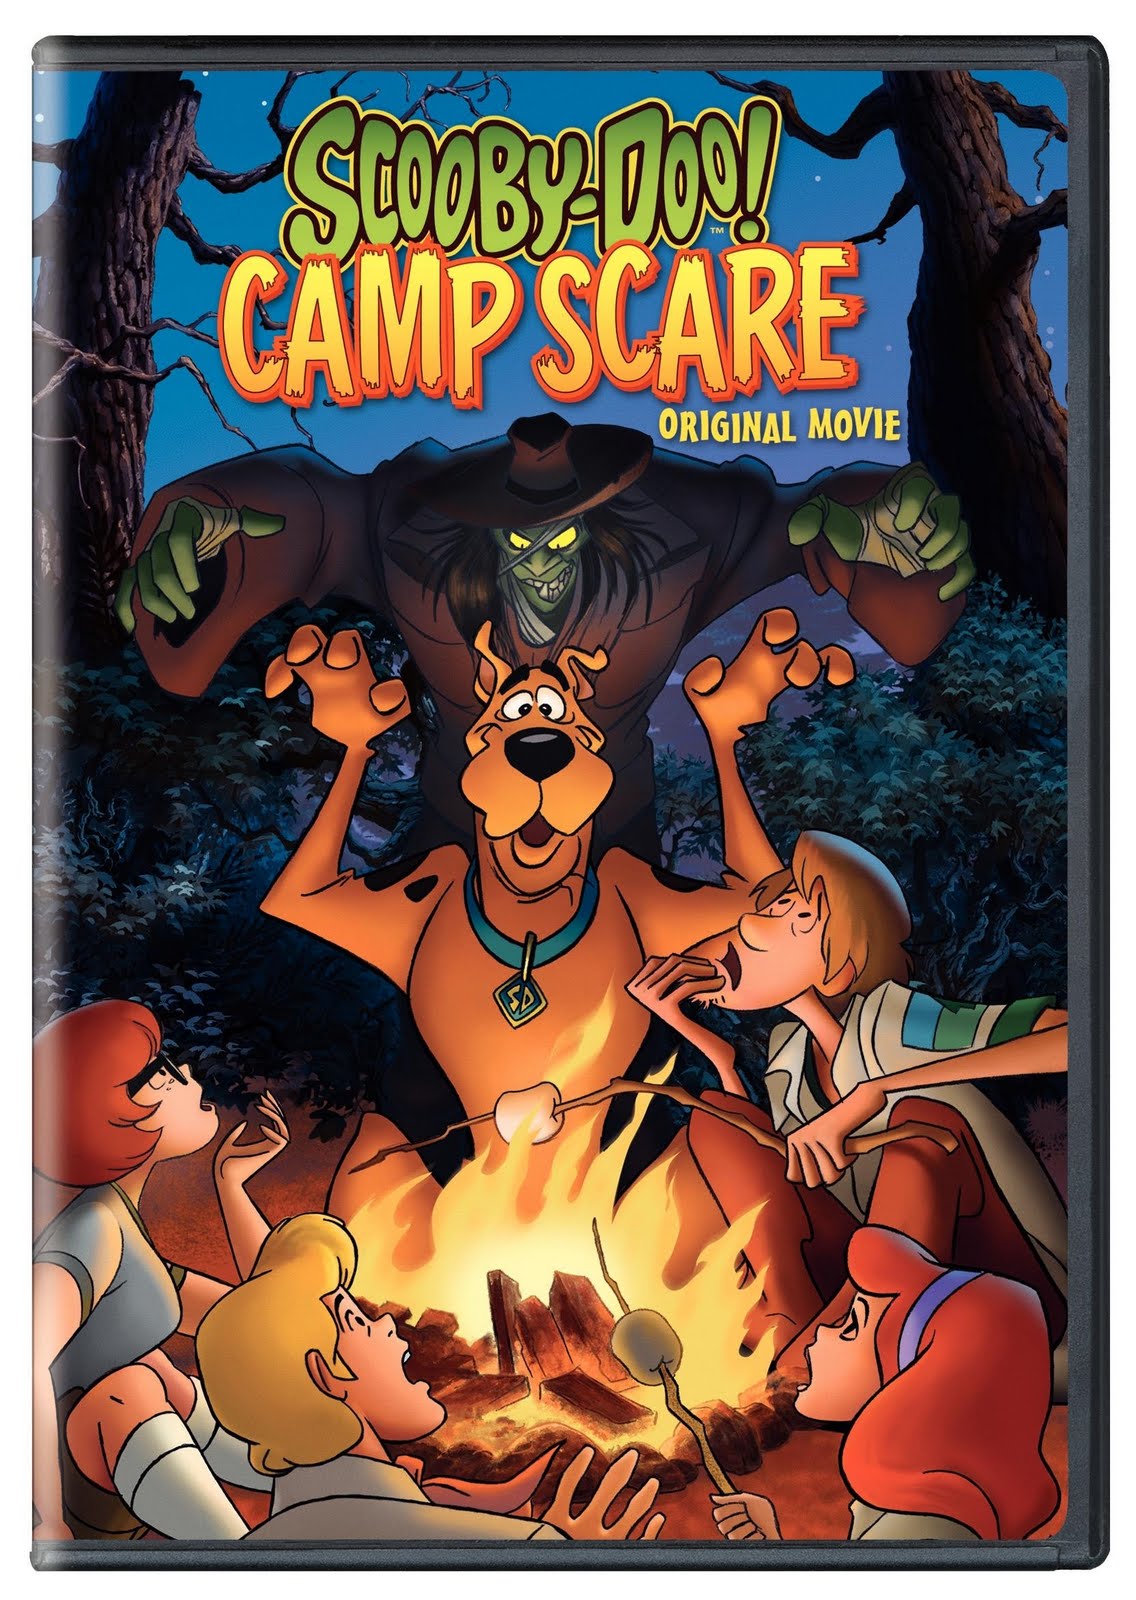 فيلم سكوبى دوو scooby doo camp scare 2010  Scooby+Doo+Camp+Scare+DVD